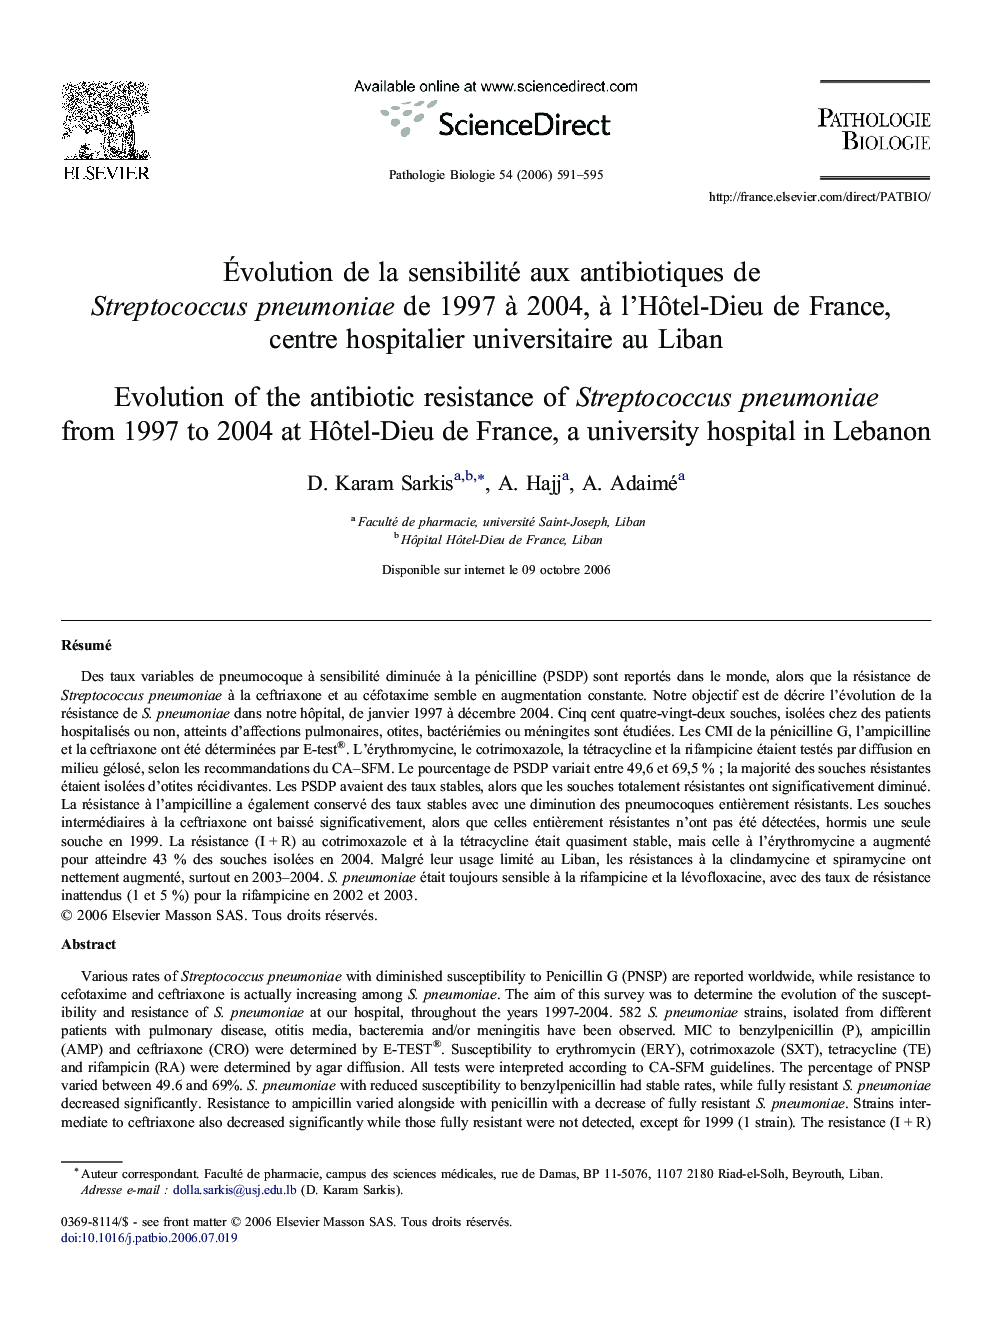 Évolution de la sensibilité aux antibiotiques de Streptococcus pneumoniae de 1997 à 2004, à l'Hôtel-Dieu de France, centre hospitalier universitaire au Liban